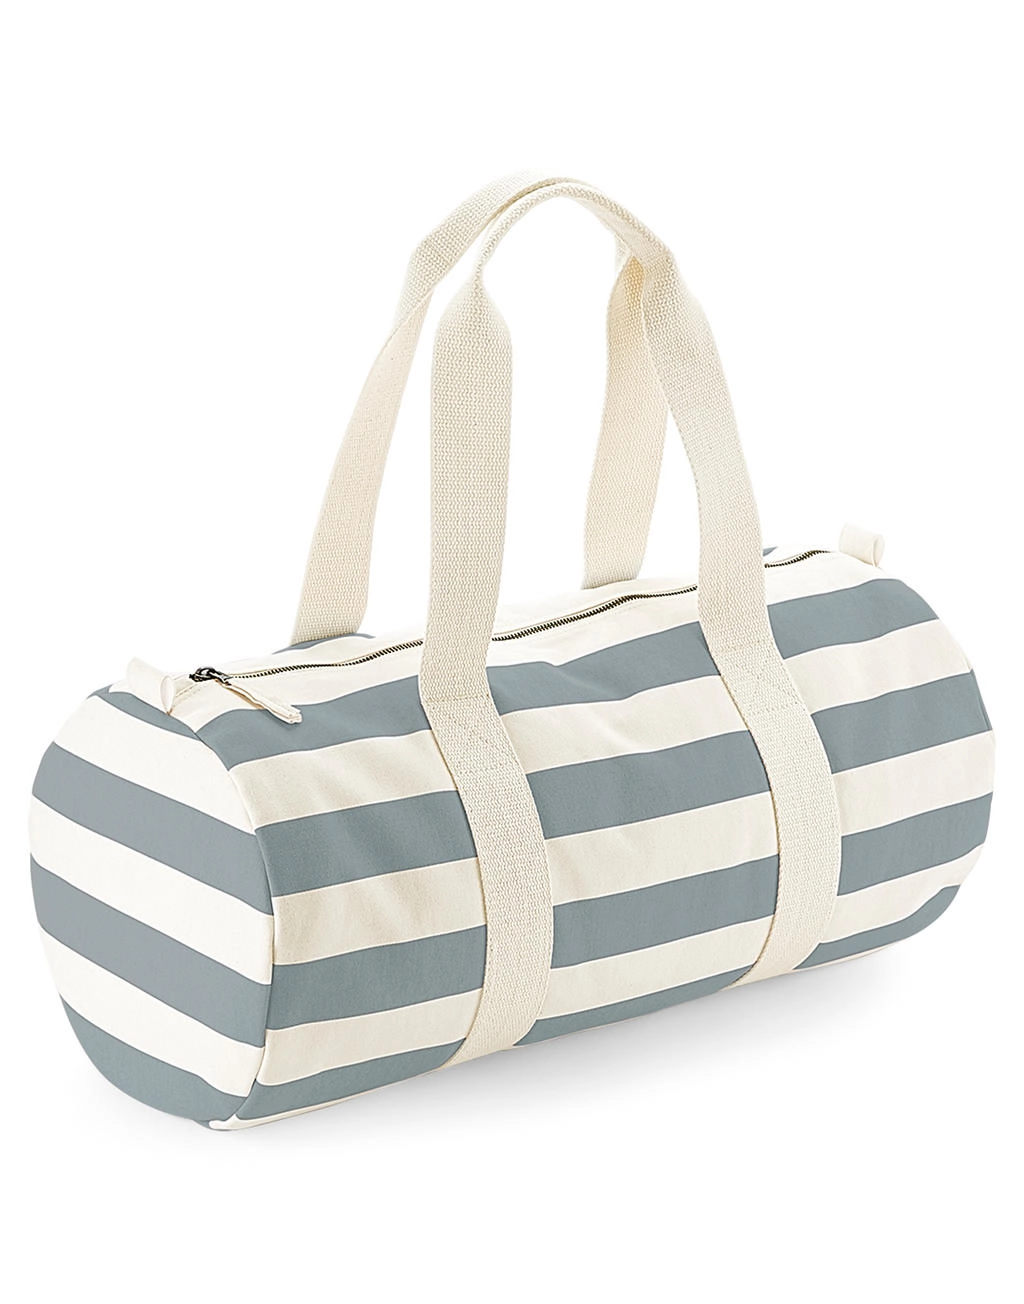 Nautical Barrel Bag zum Besticken und Bedrucken mit Ihren Logo, Schriftzug oder Motiv.